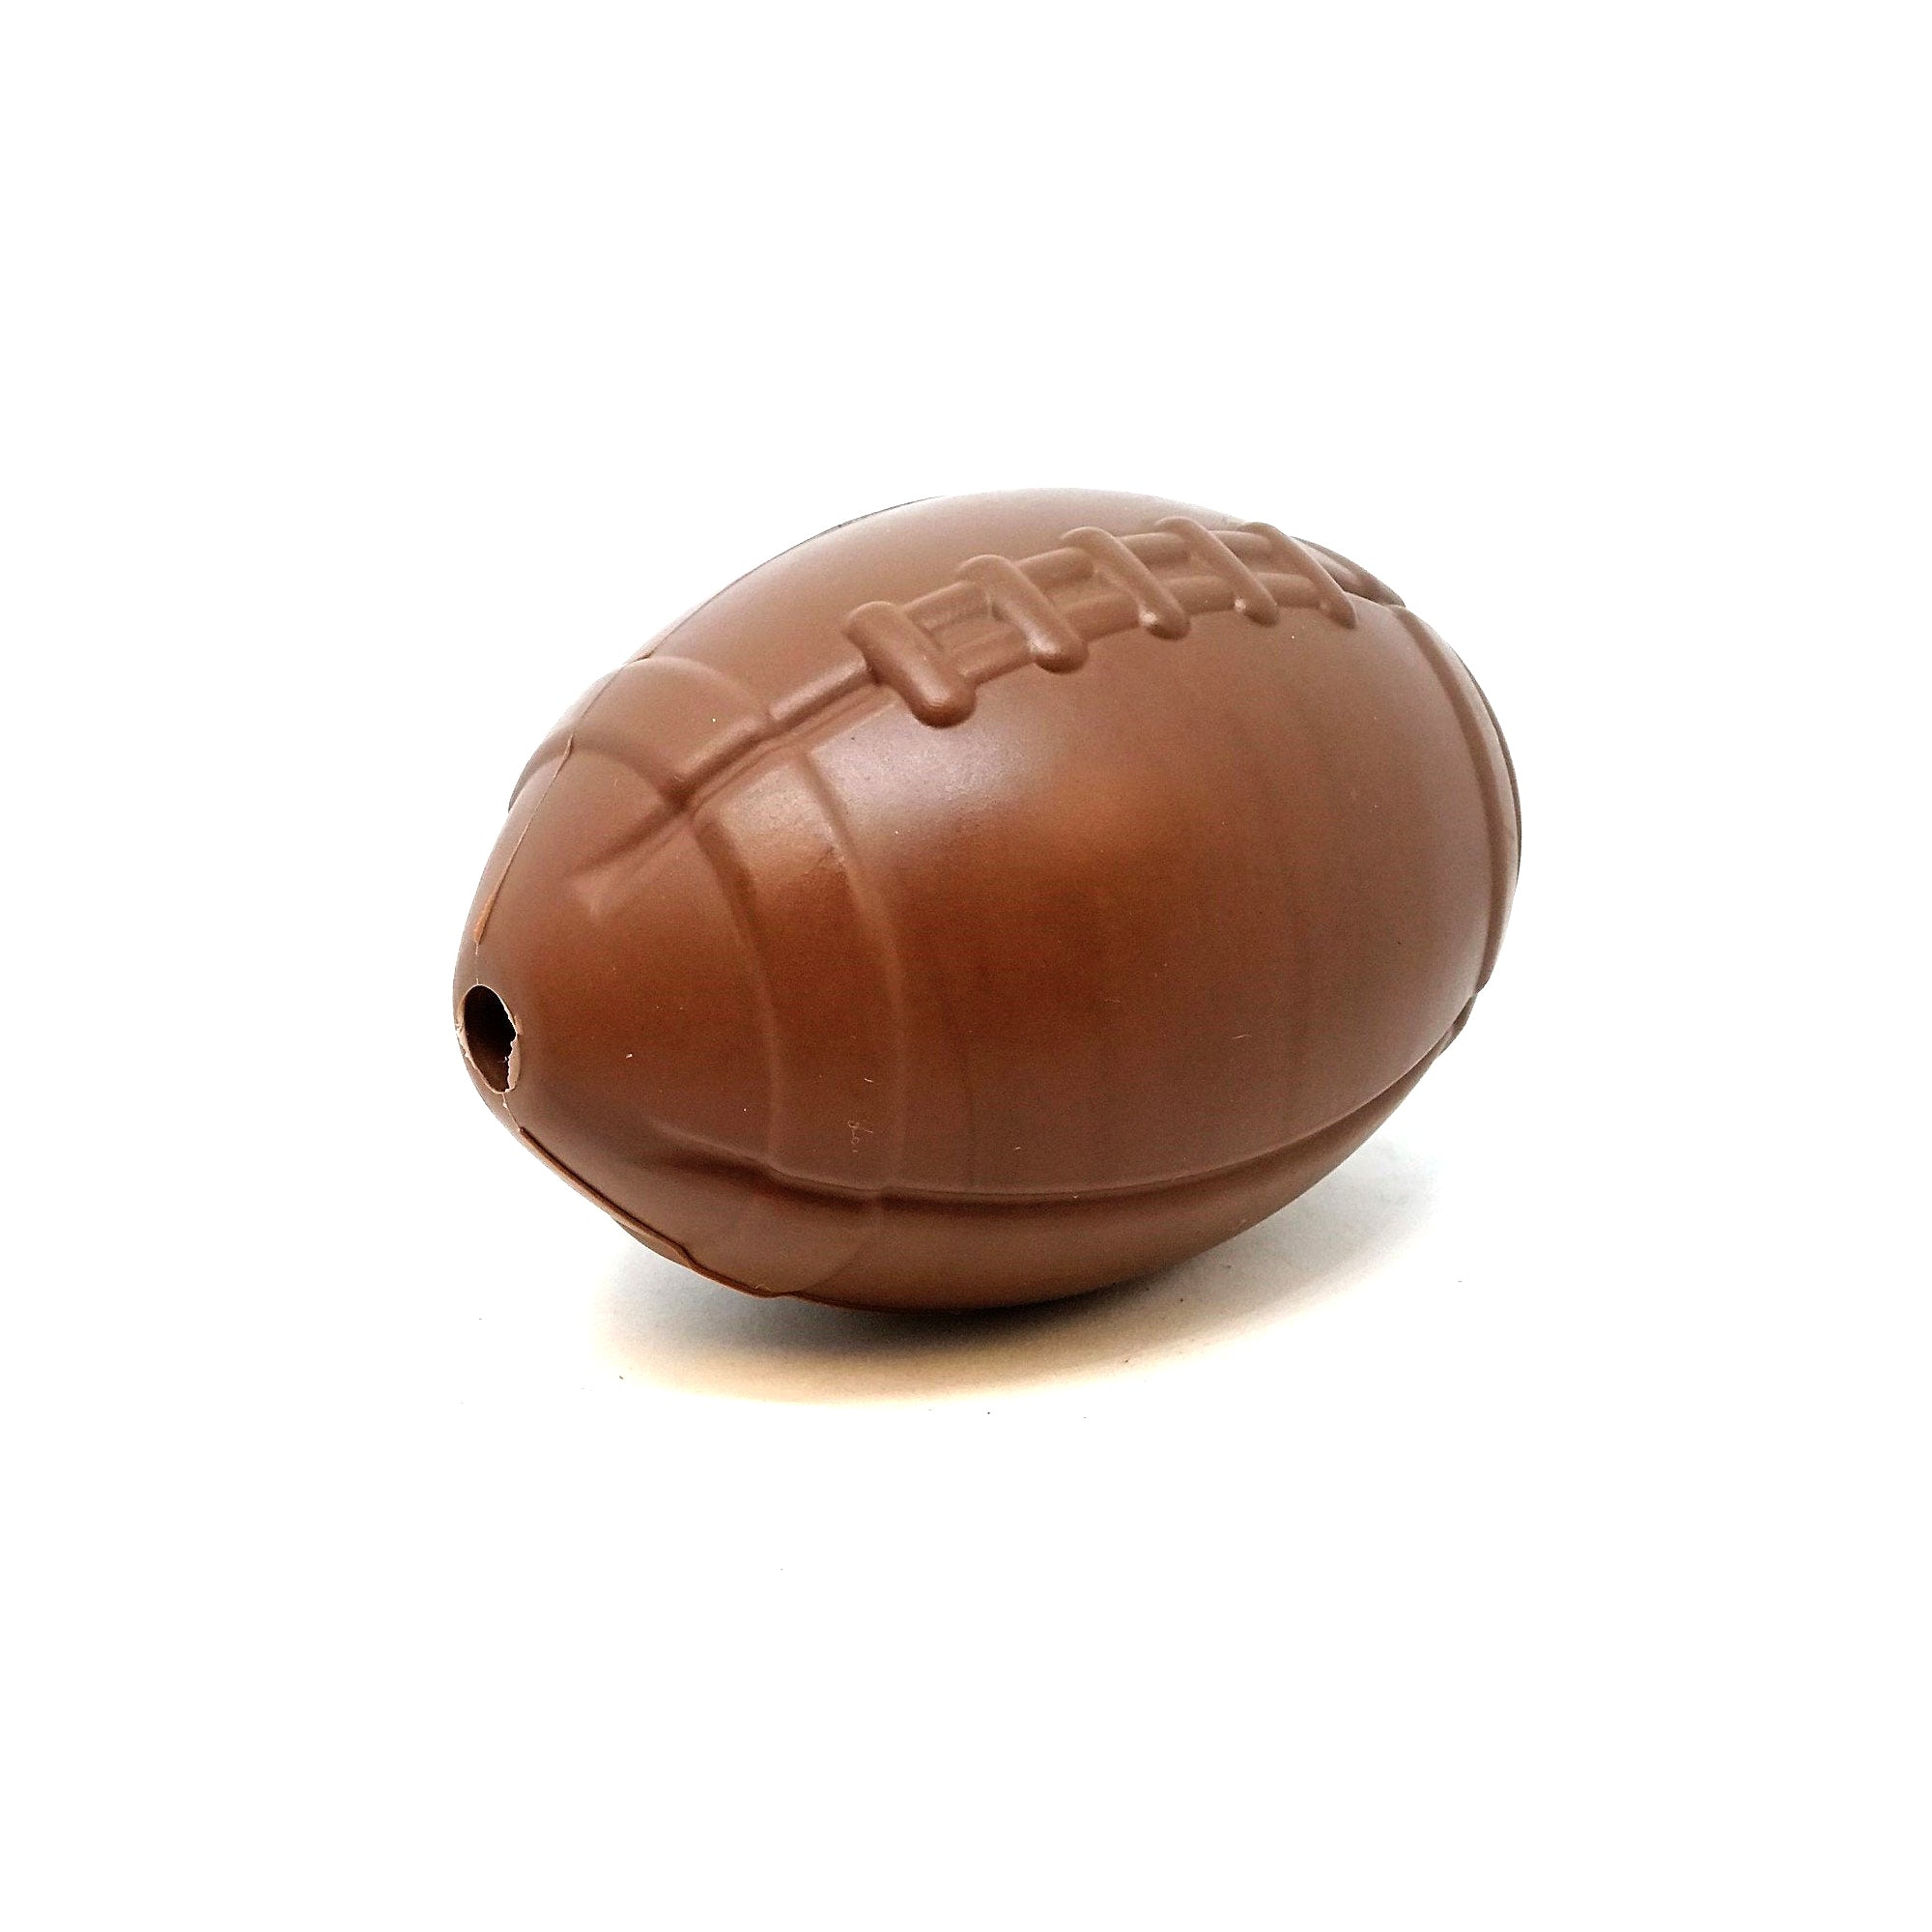 MKB Football Kauspielzeug und Leckerlispender aus haltbarem Gummi – groß – braun